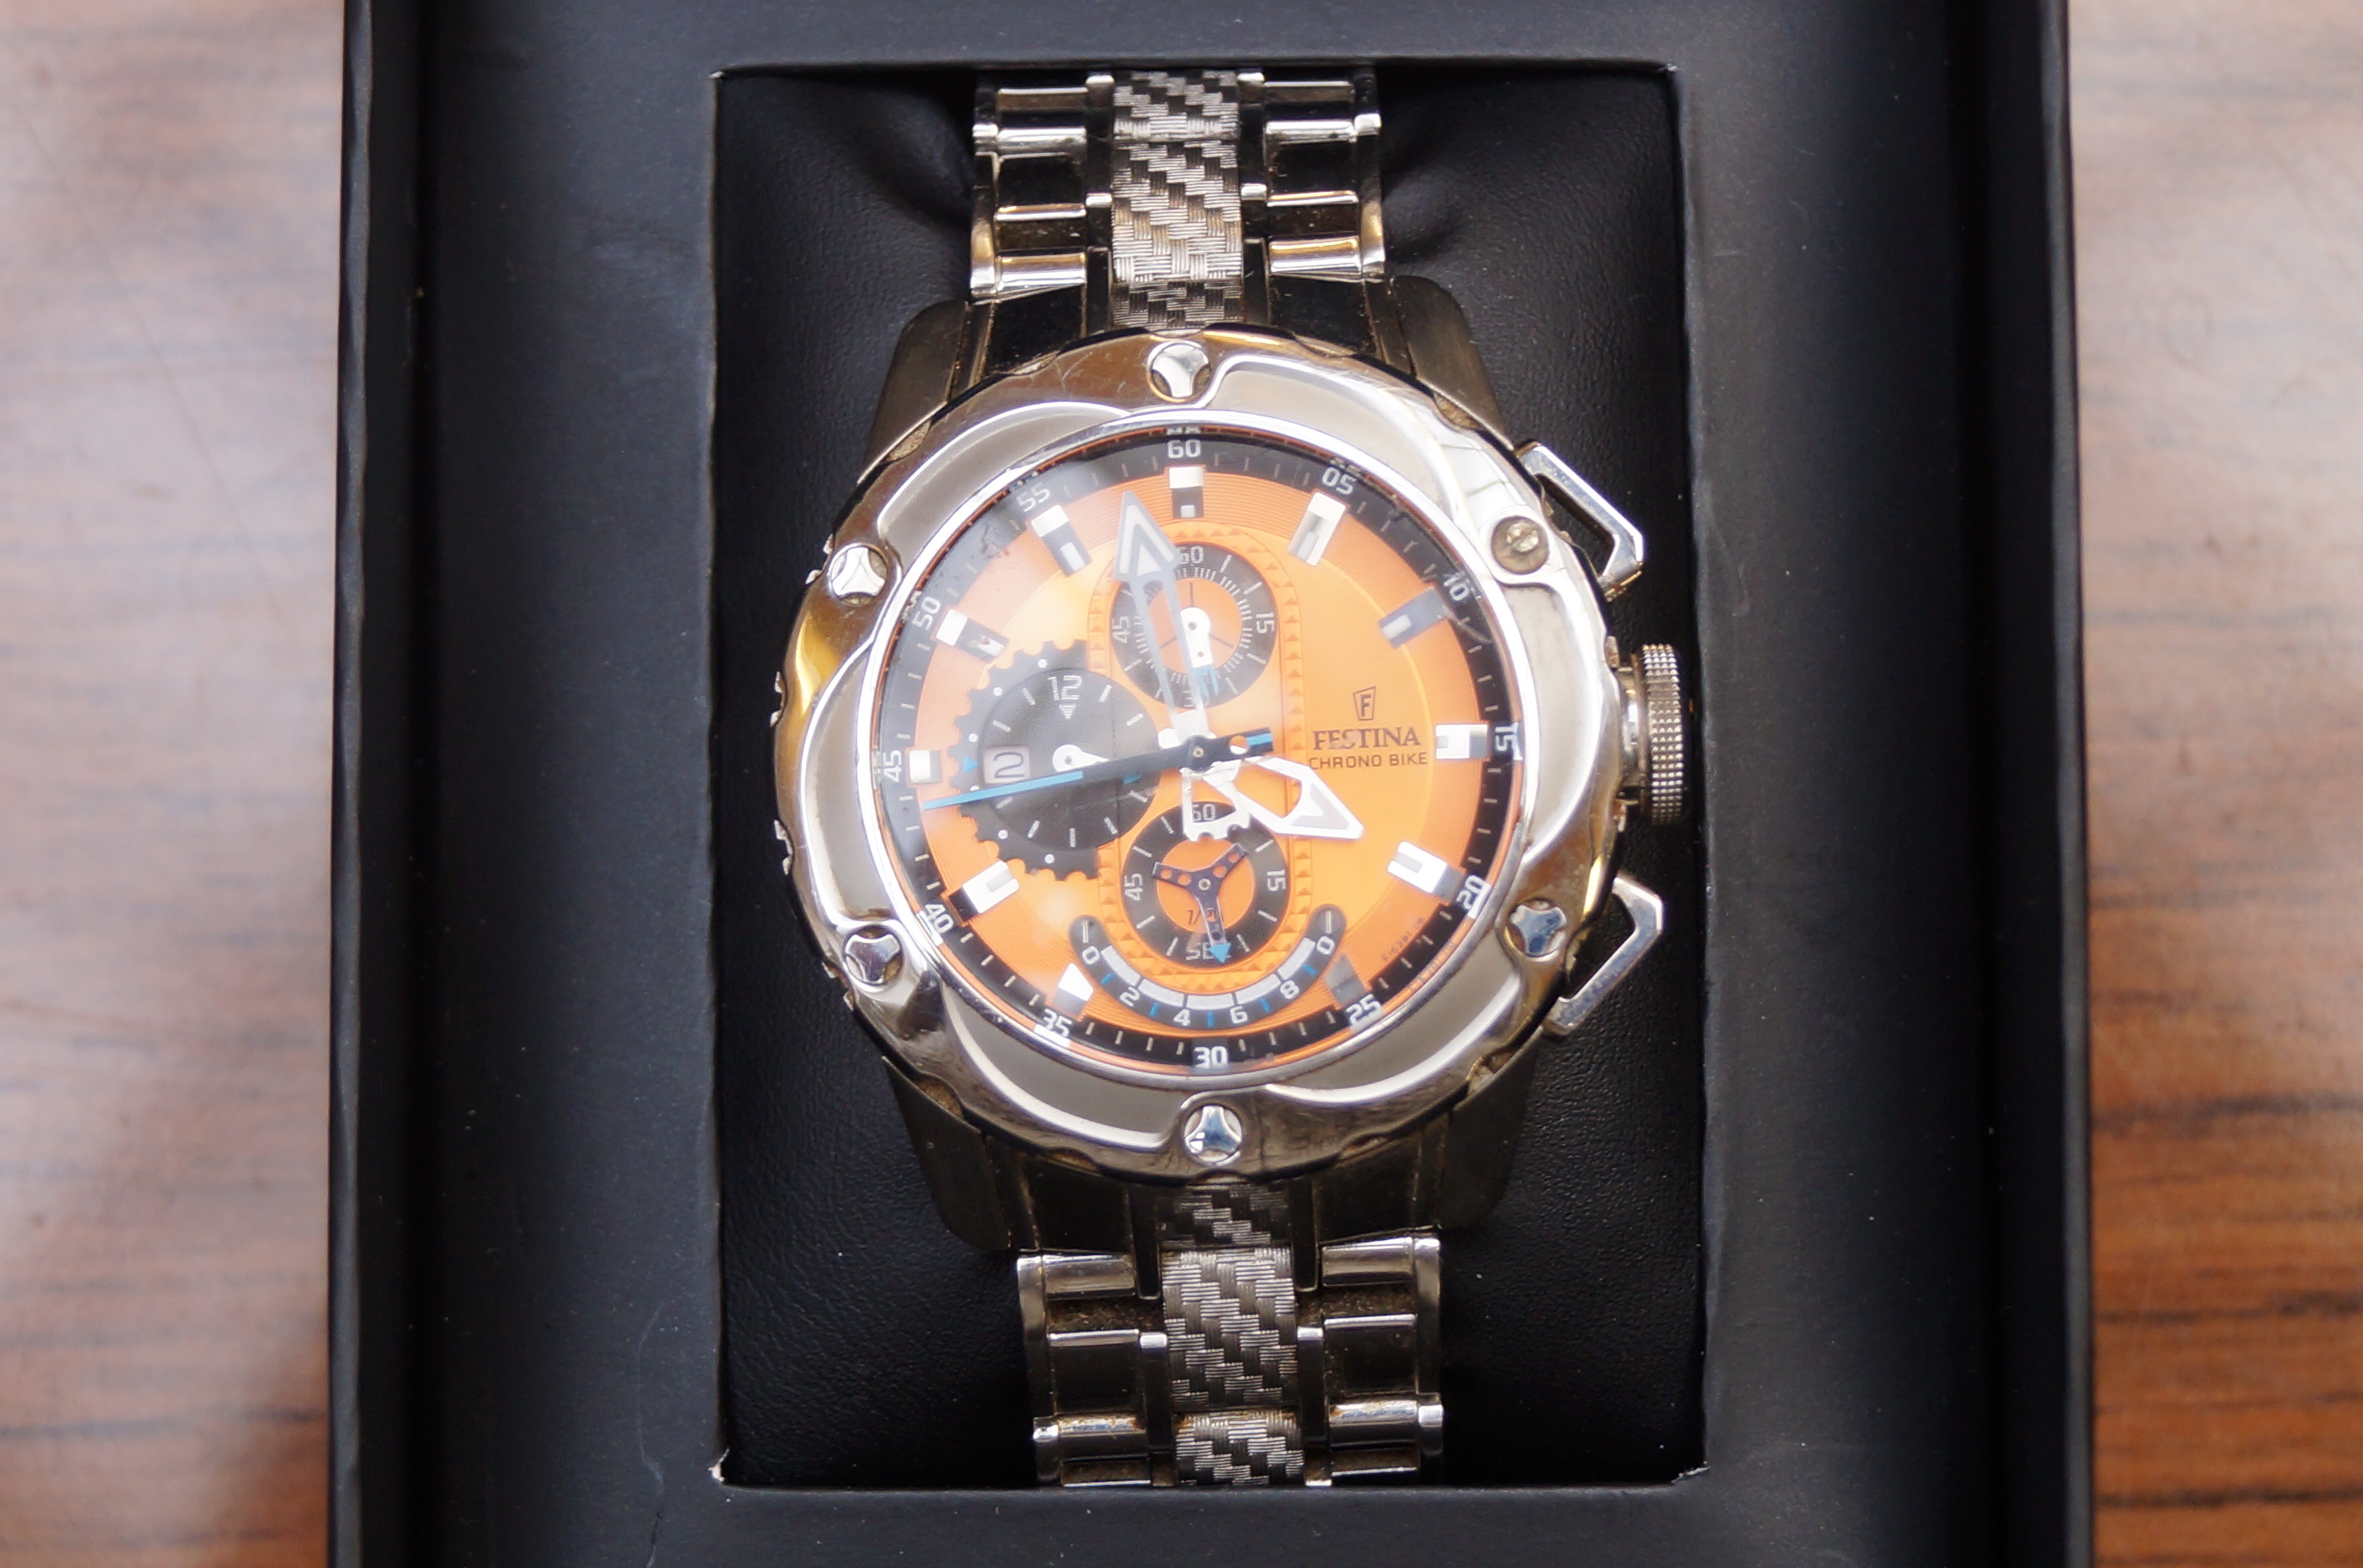 Gent's Festina wristwatch